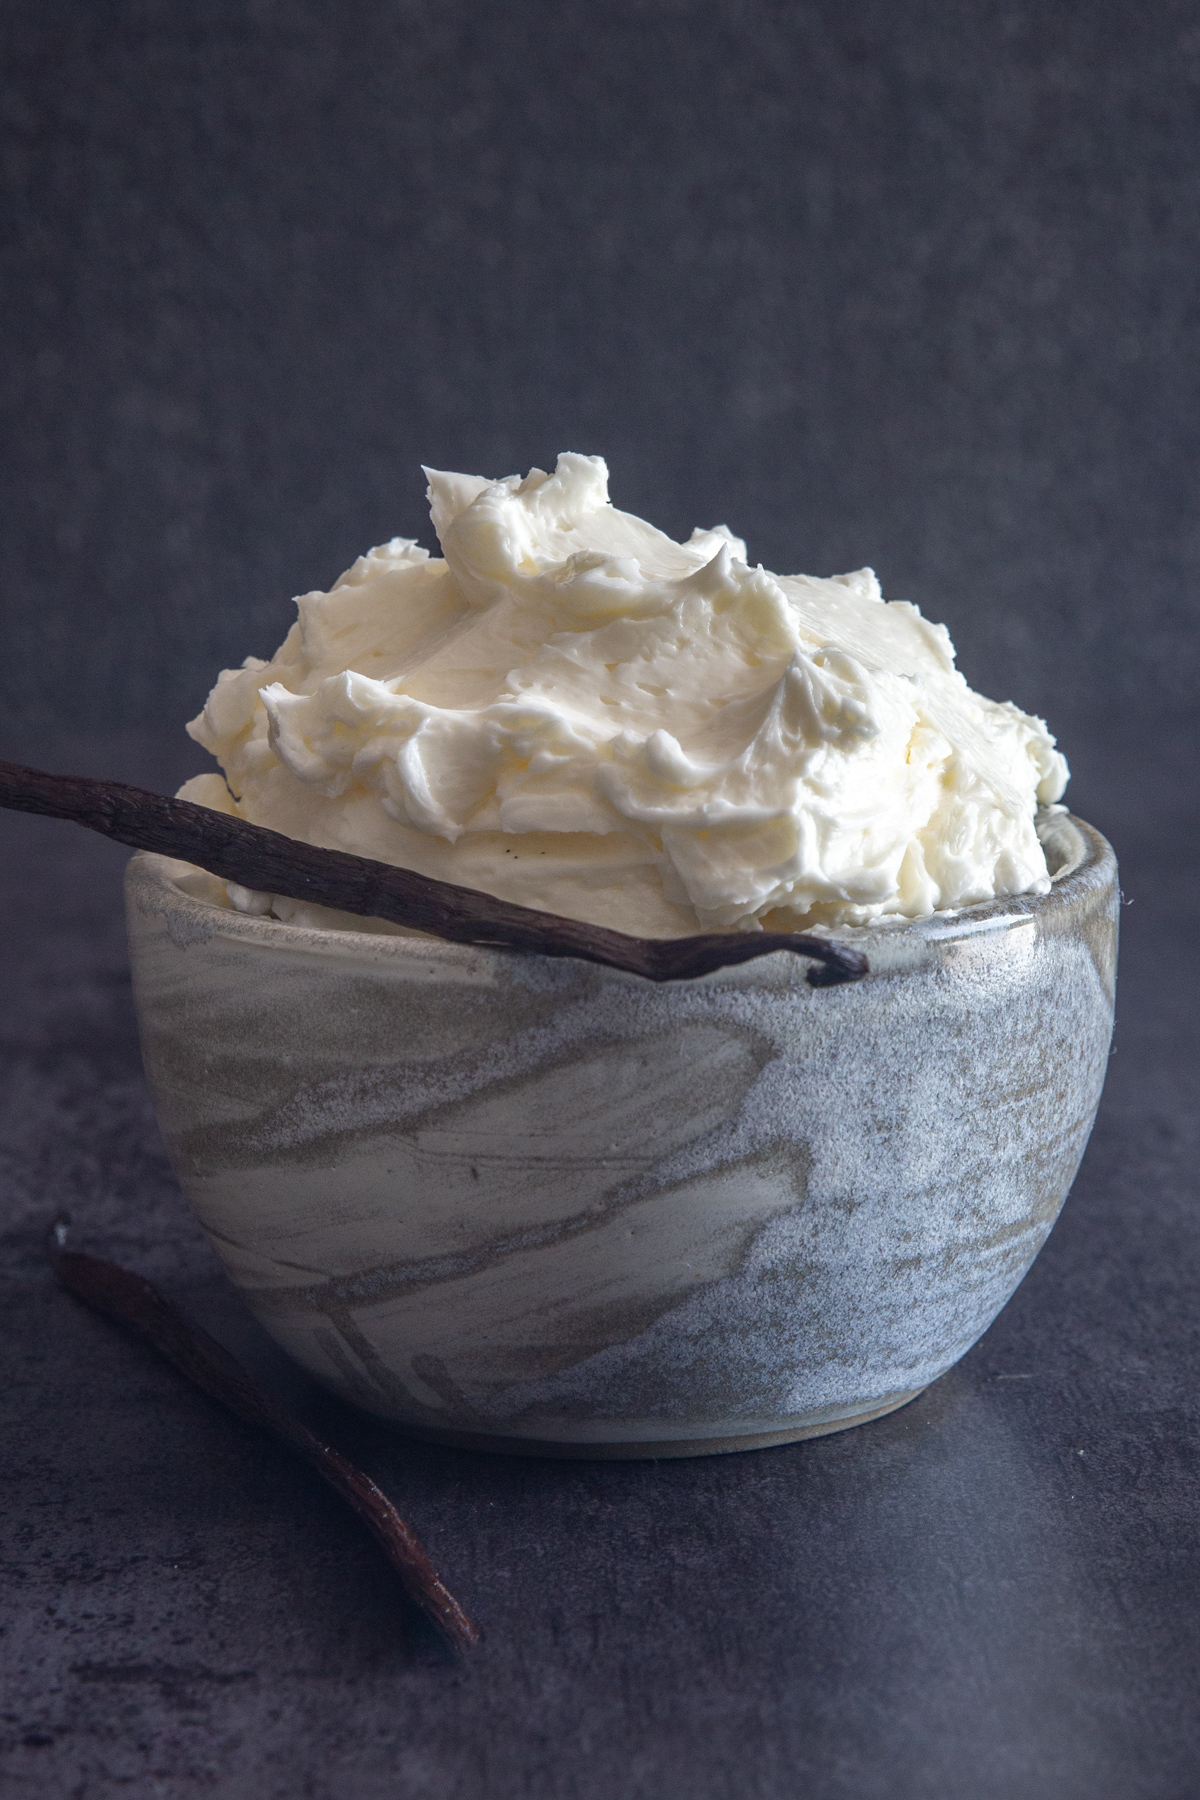 Swiss meringue buttercream in a blue bowl.